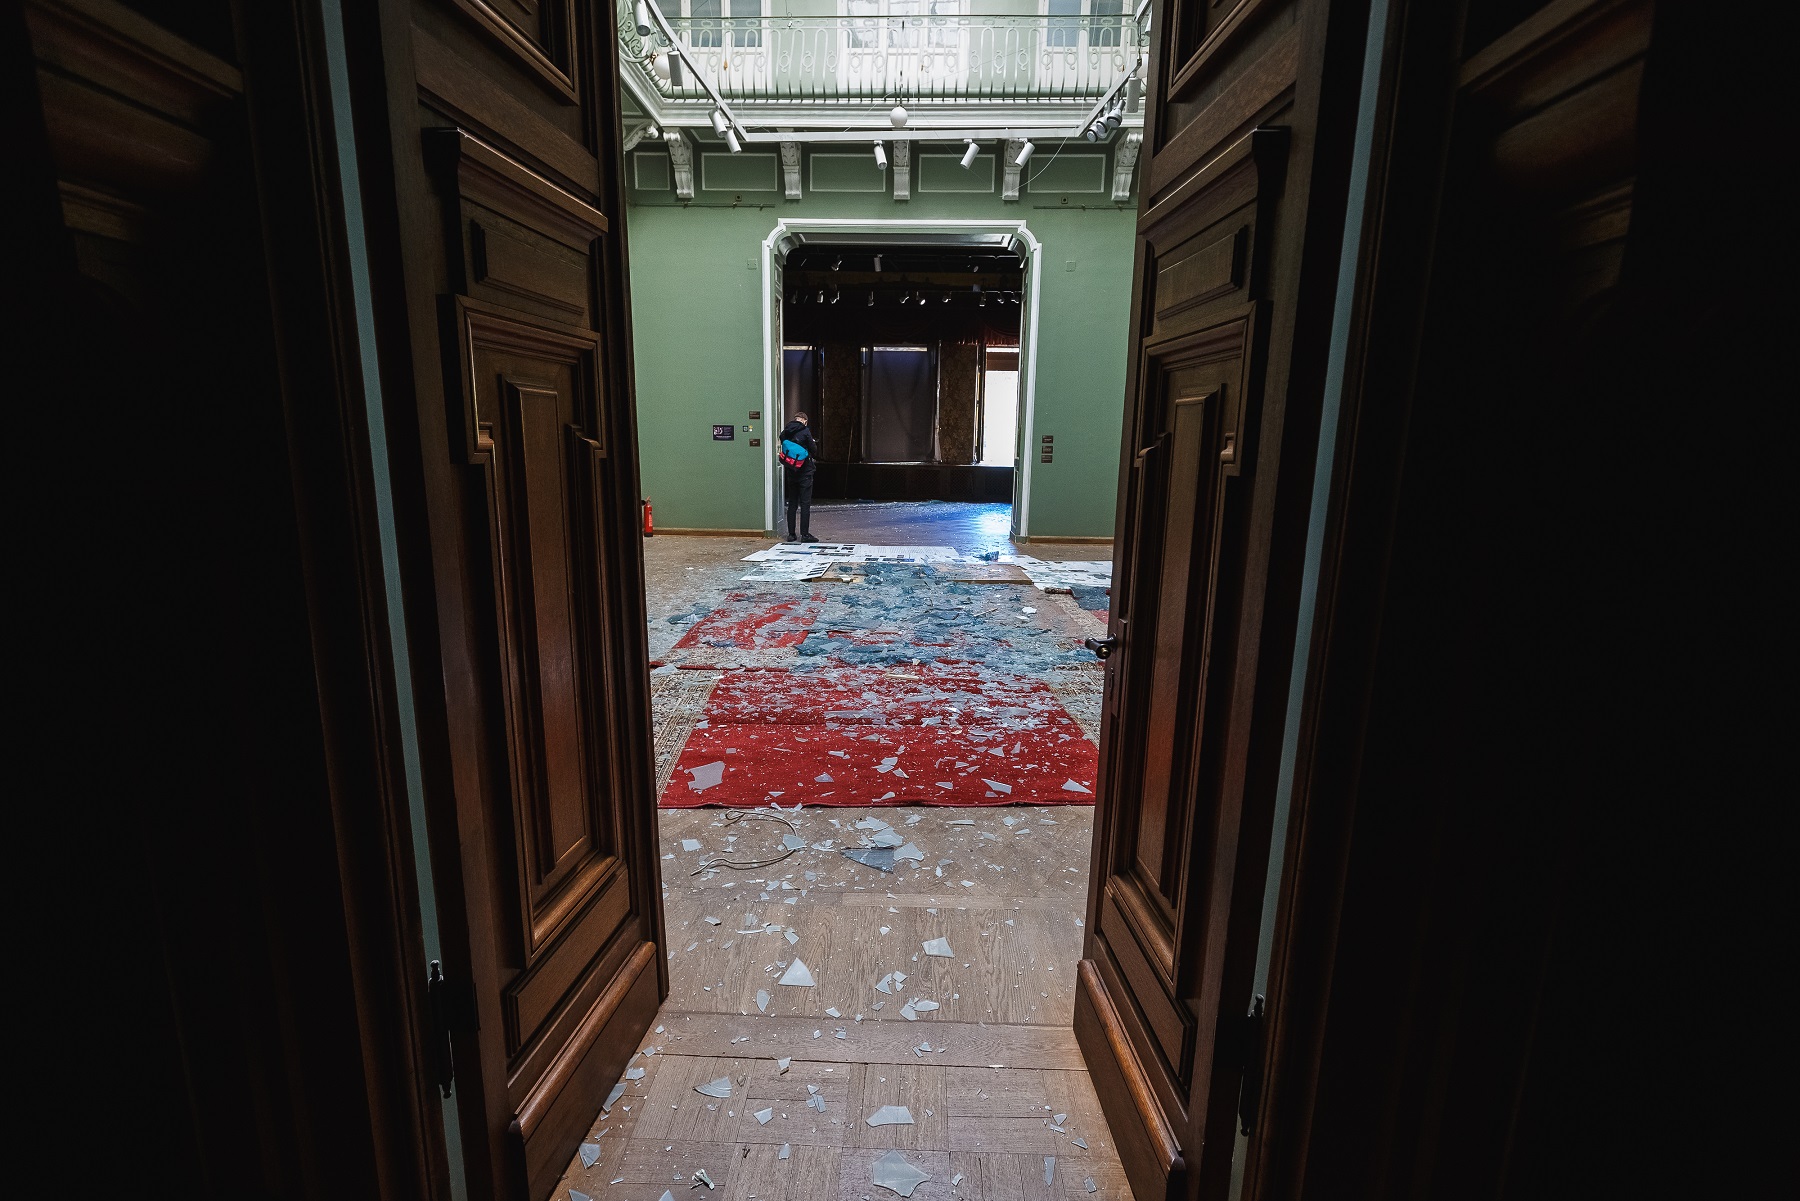 Eingangshalle des Khanenko Museums: Blick durch eine Holztür in einen Raum mit Glasscherben auf dem Boden.